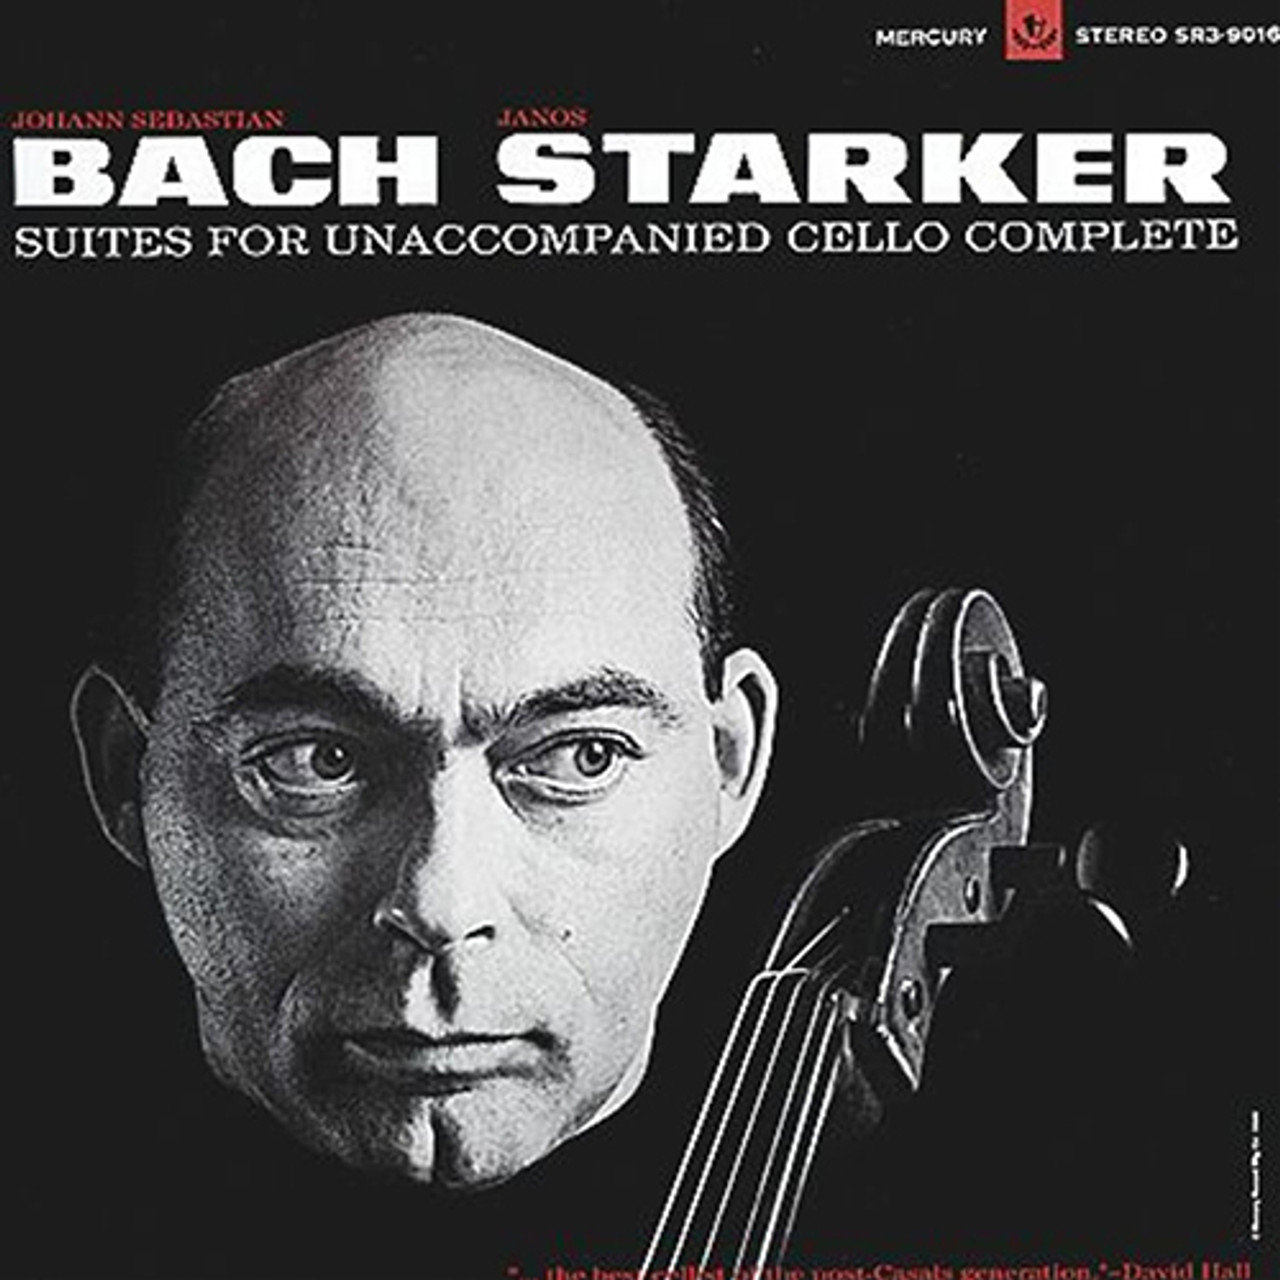 Music　Starker　Janos　Solo　Suites　Bach　3LP)　Direct　Import　(180g　Cello　Vinyl